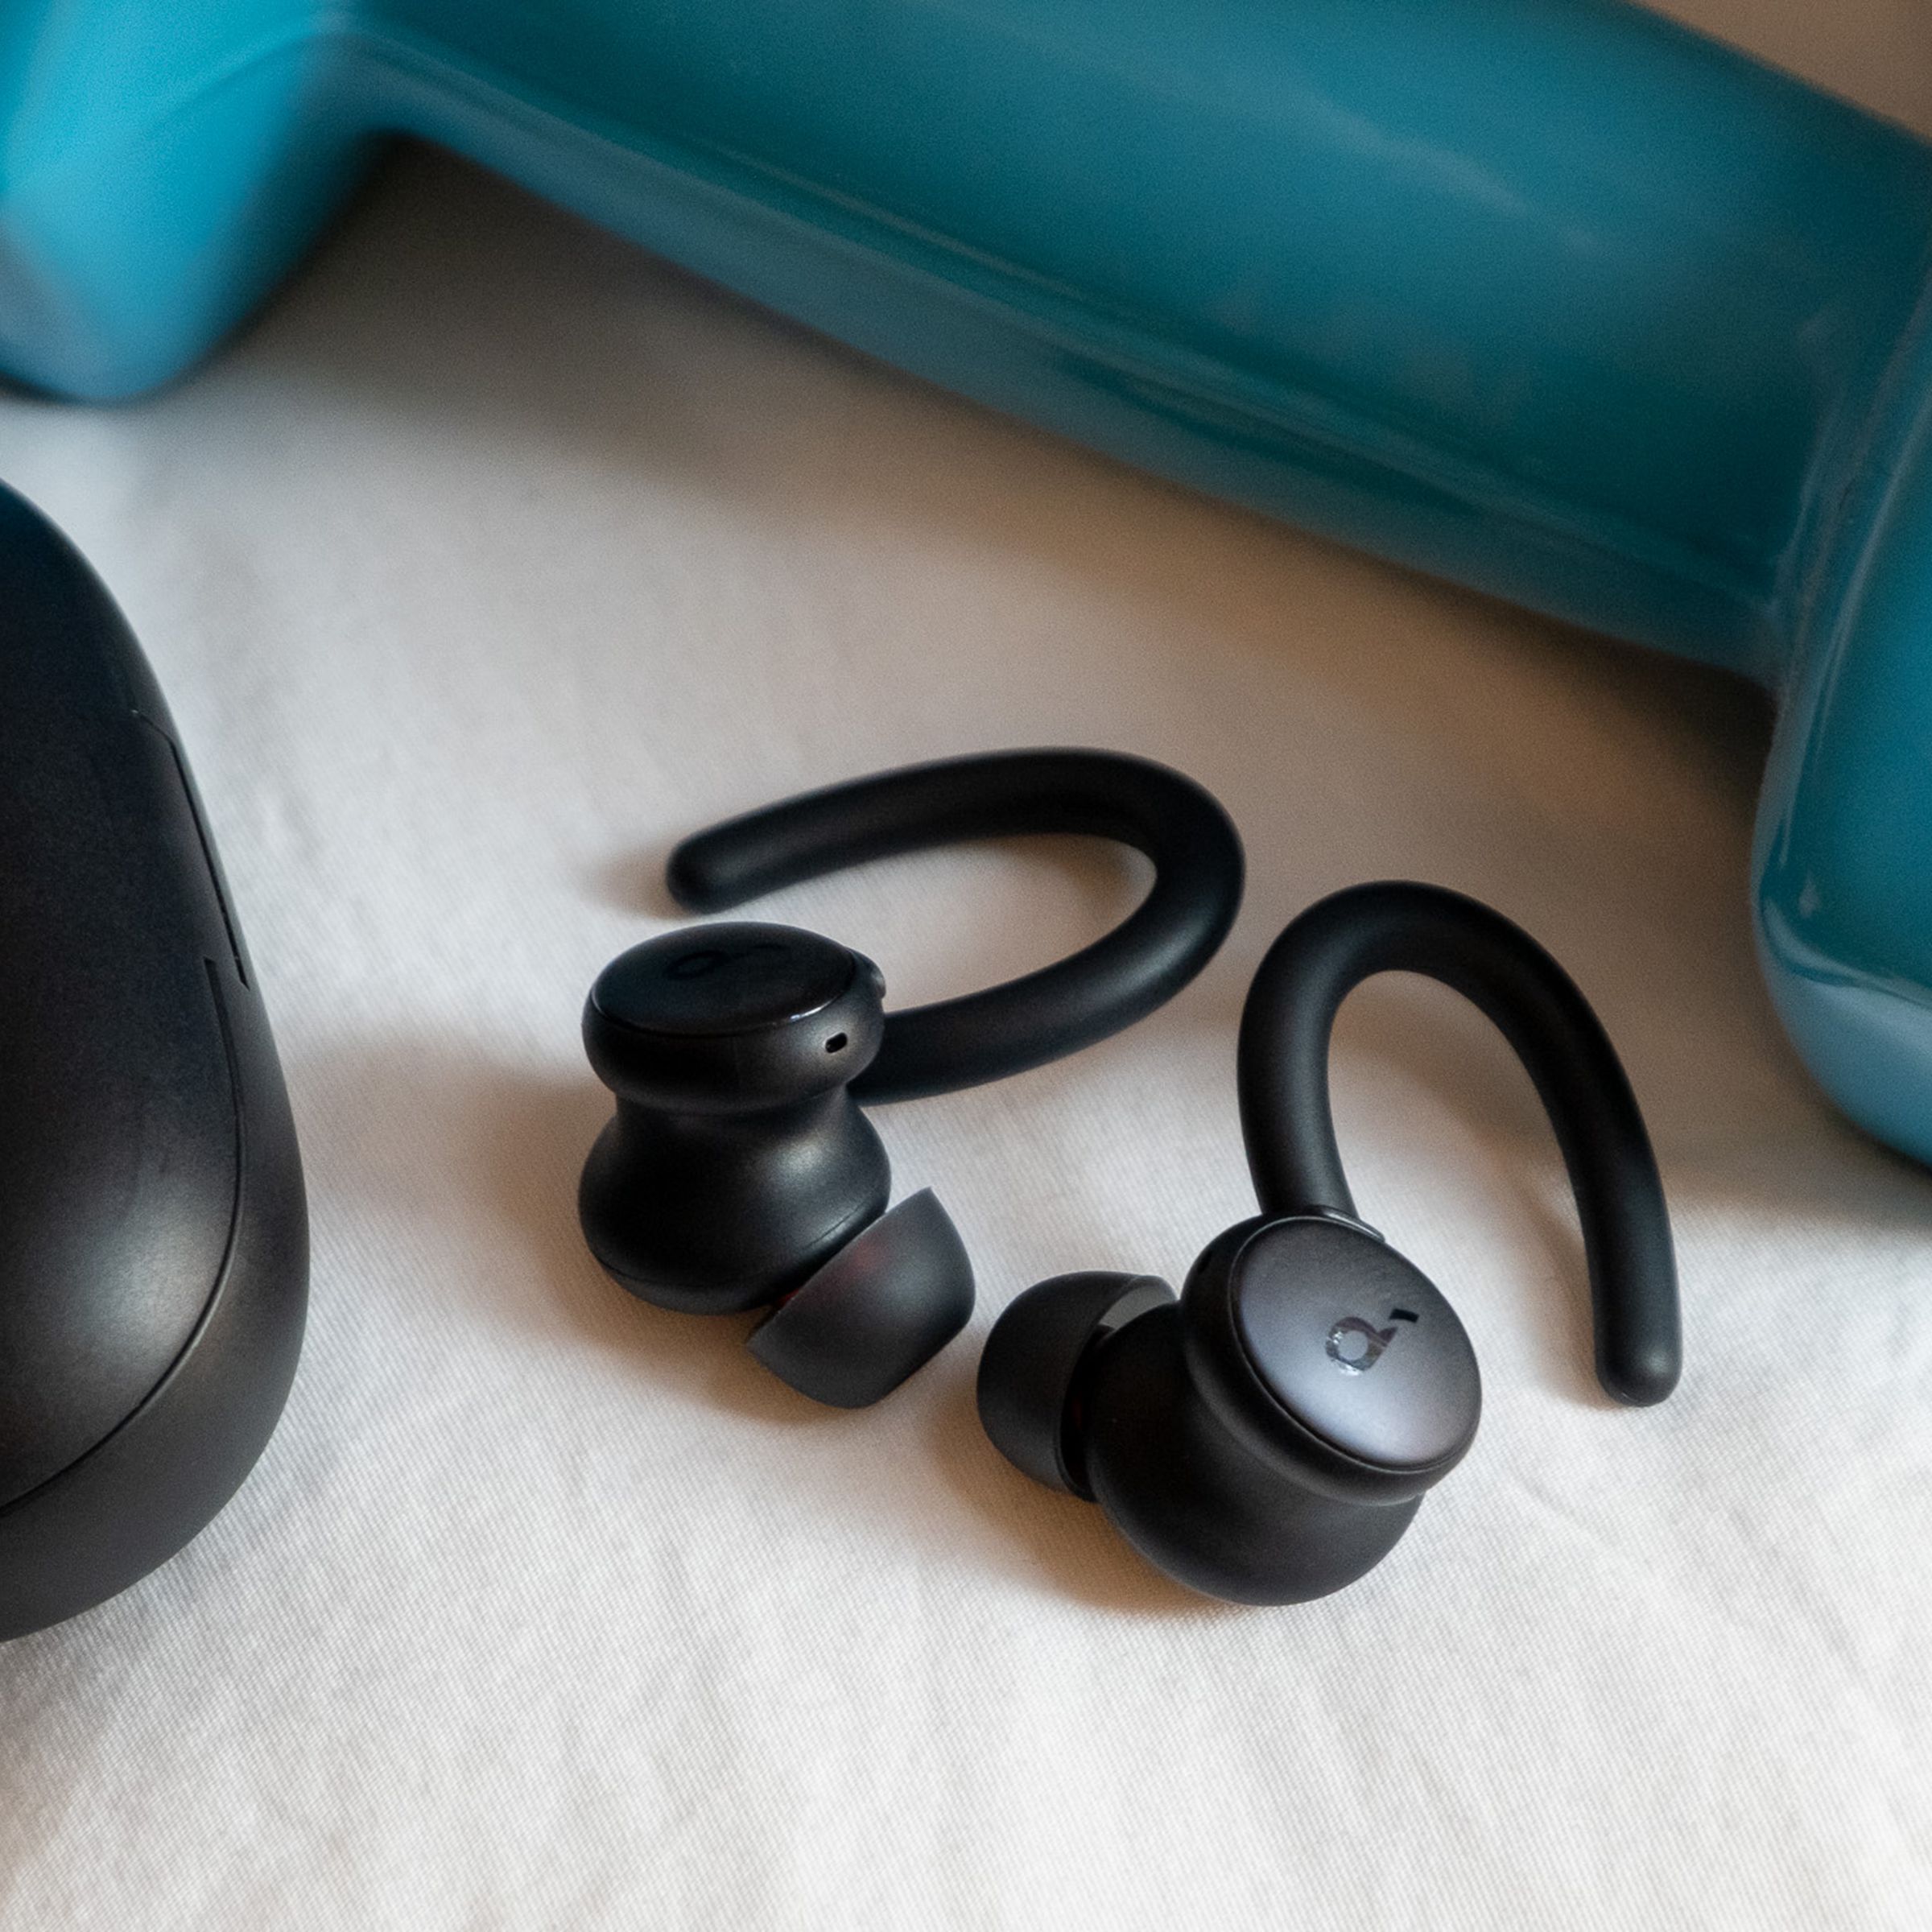 An image of Soundcoreâs Sport X10 earbuds next to a weight.